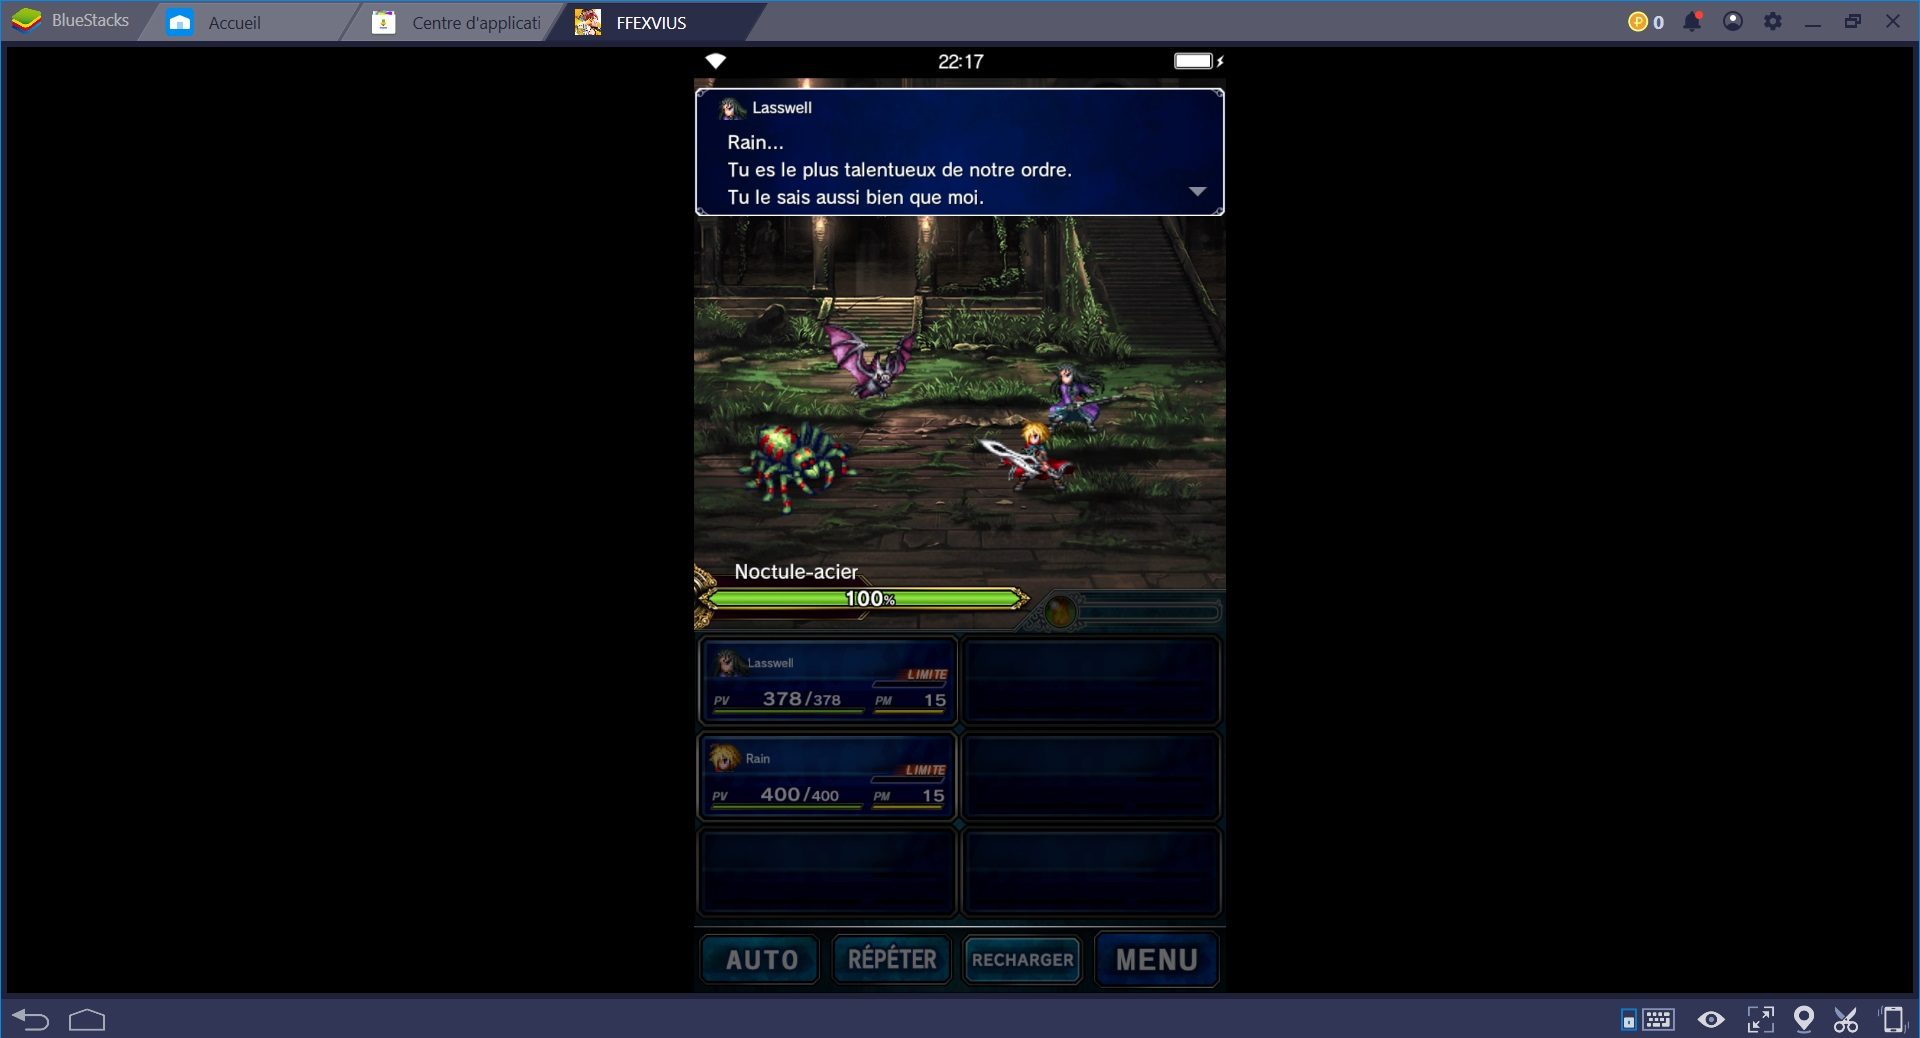 Redécouvrez Final Fantasy Brave Exvius grâce à la nouvelle fonctionnalité de BlueStacks, le Combo Key